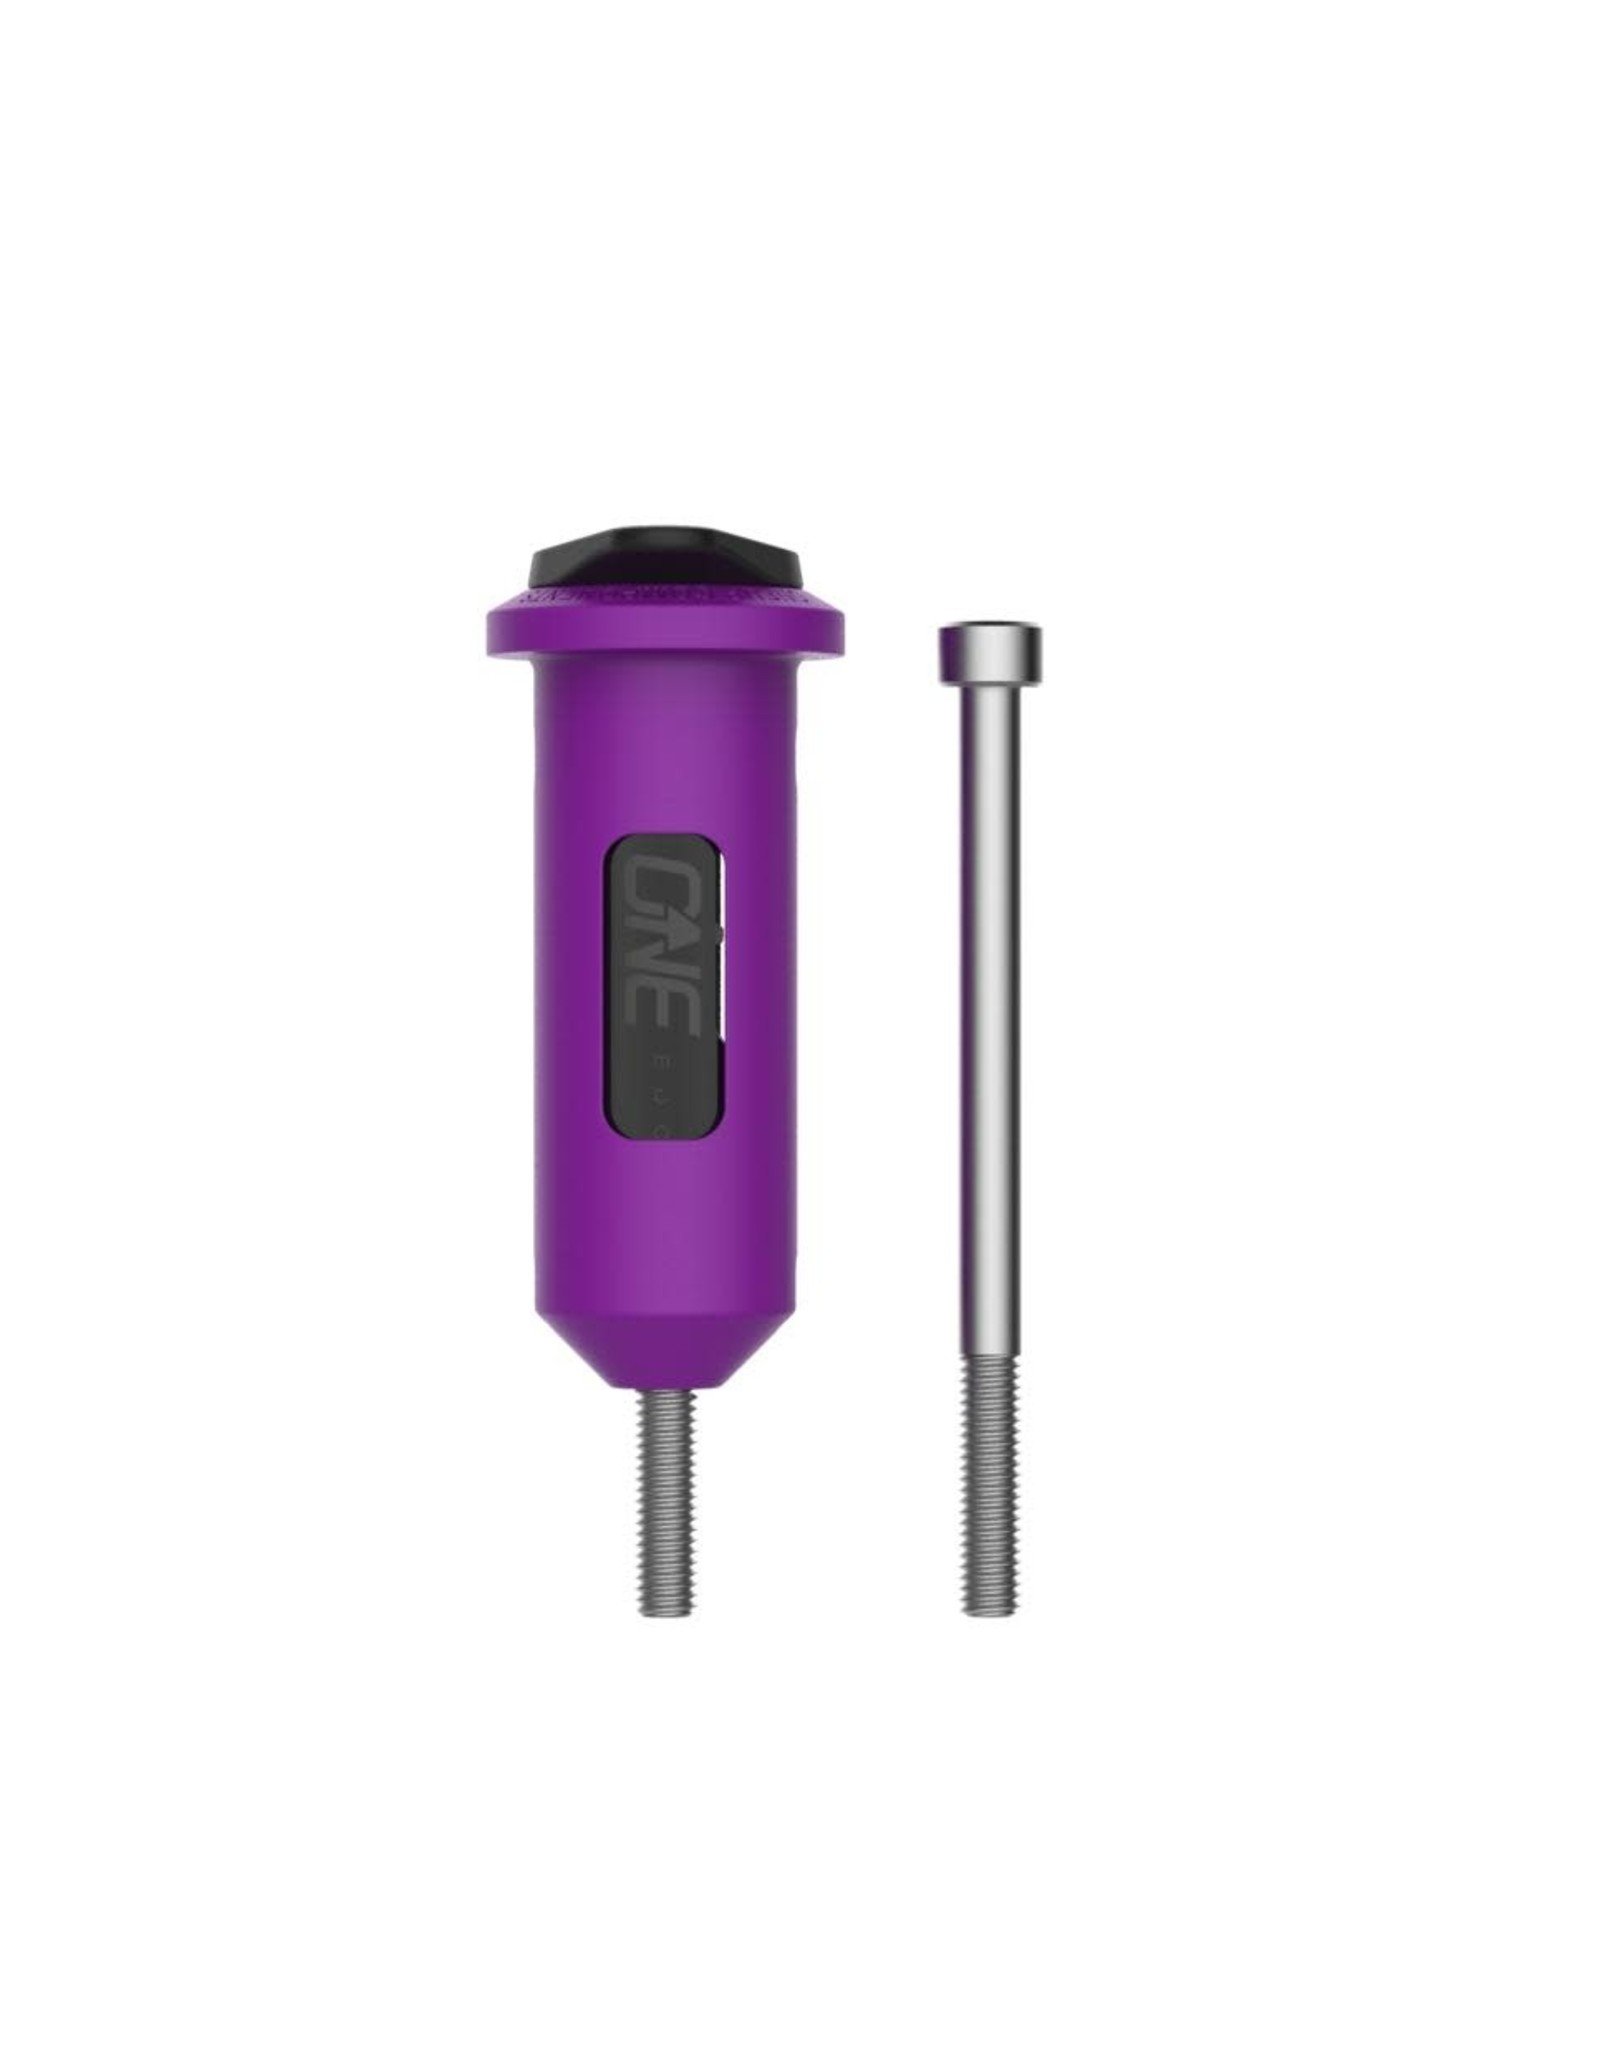 OneUp OneUp EDC Lite Tool stem tool kit